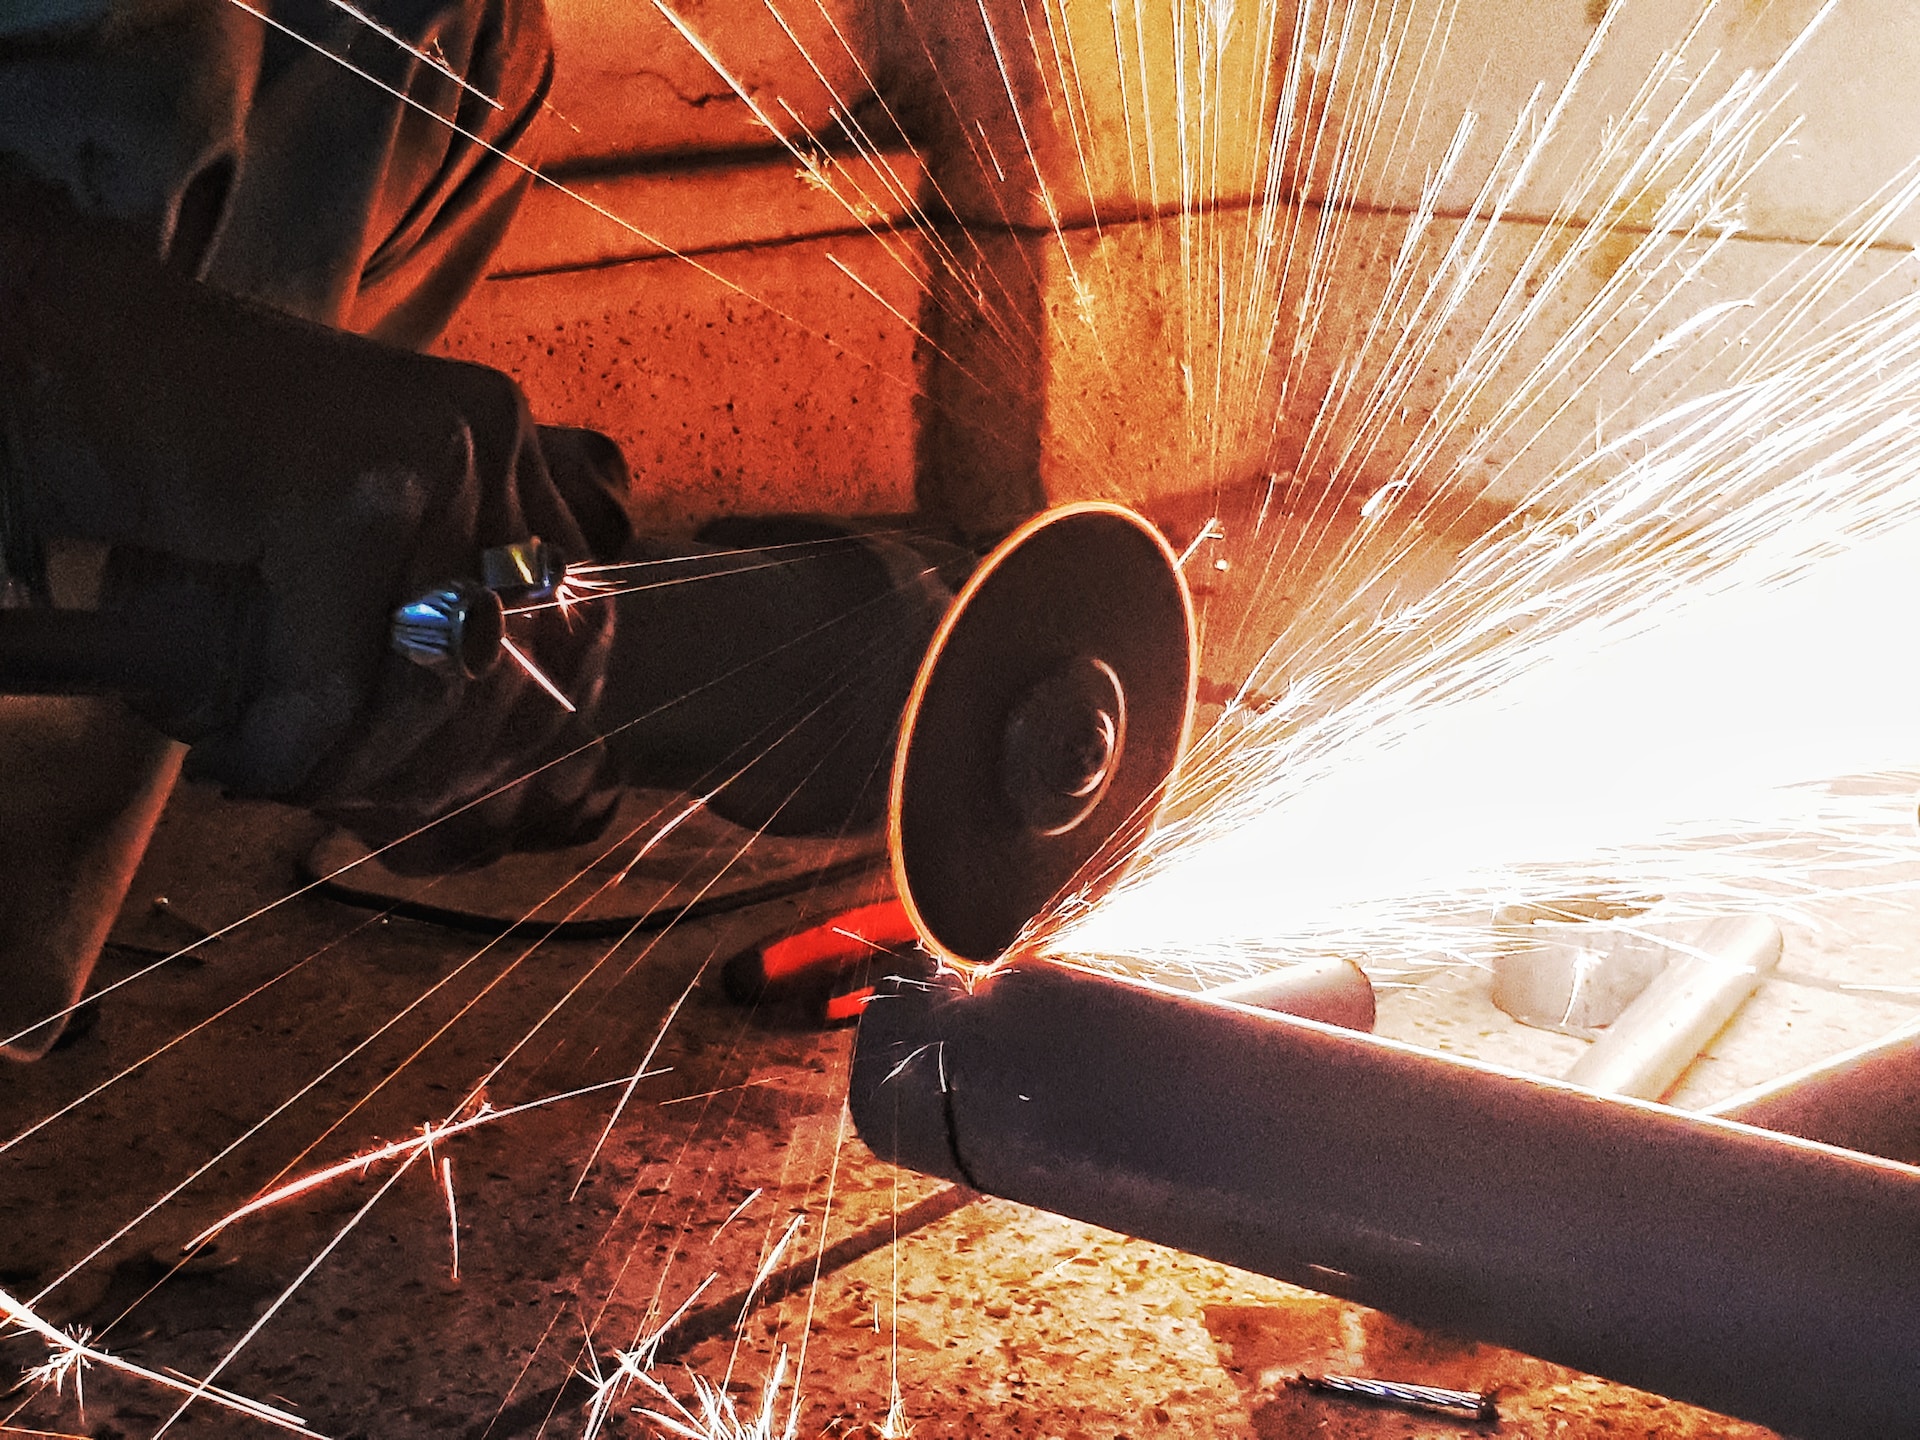 Frez wieloostrzowy — wszechstronne narzędzie do obróbki stali